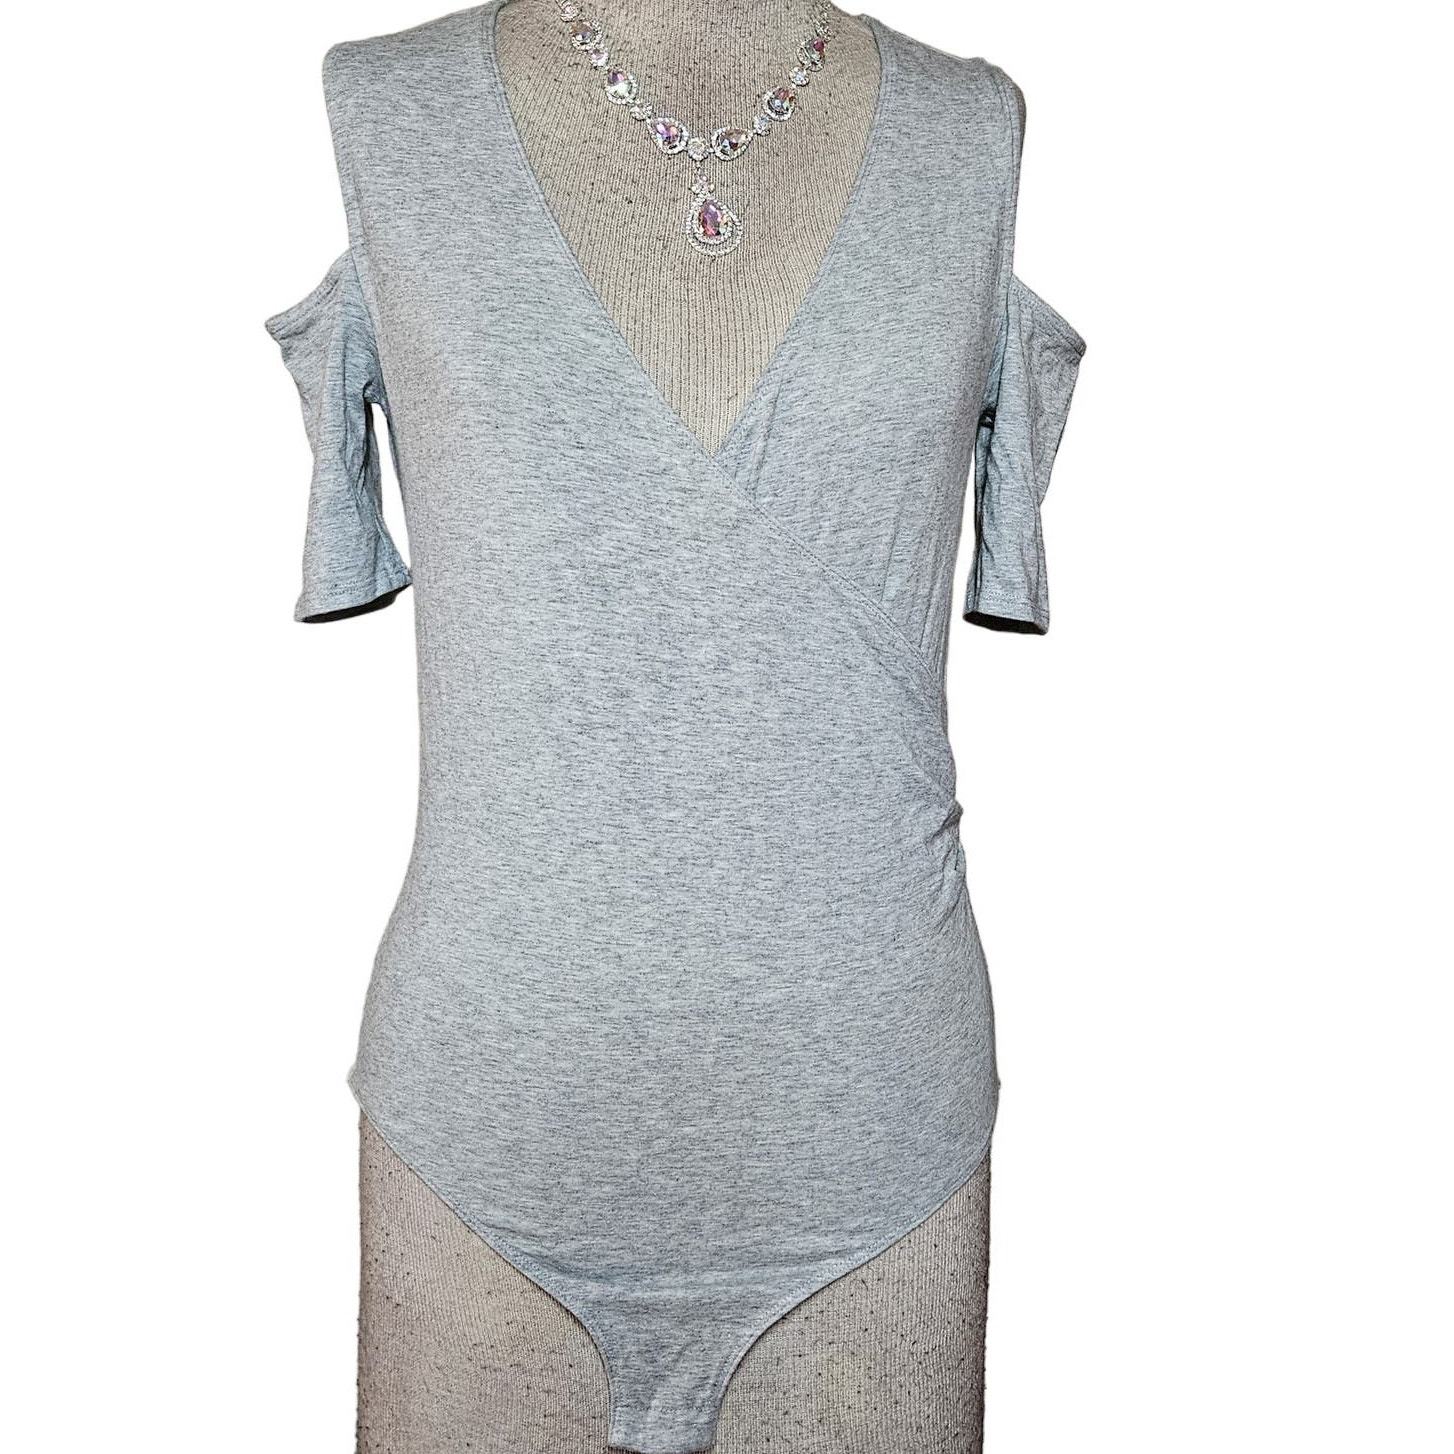 Primary image for Grey Open Shoulder V Neck Short Sleeve Bodysuit Size XS